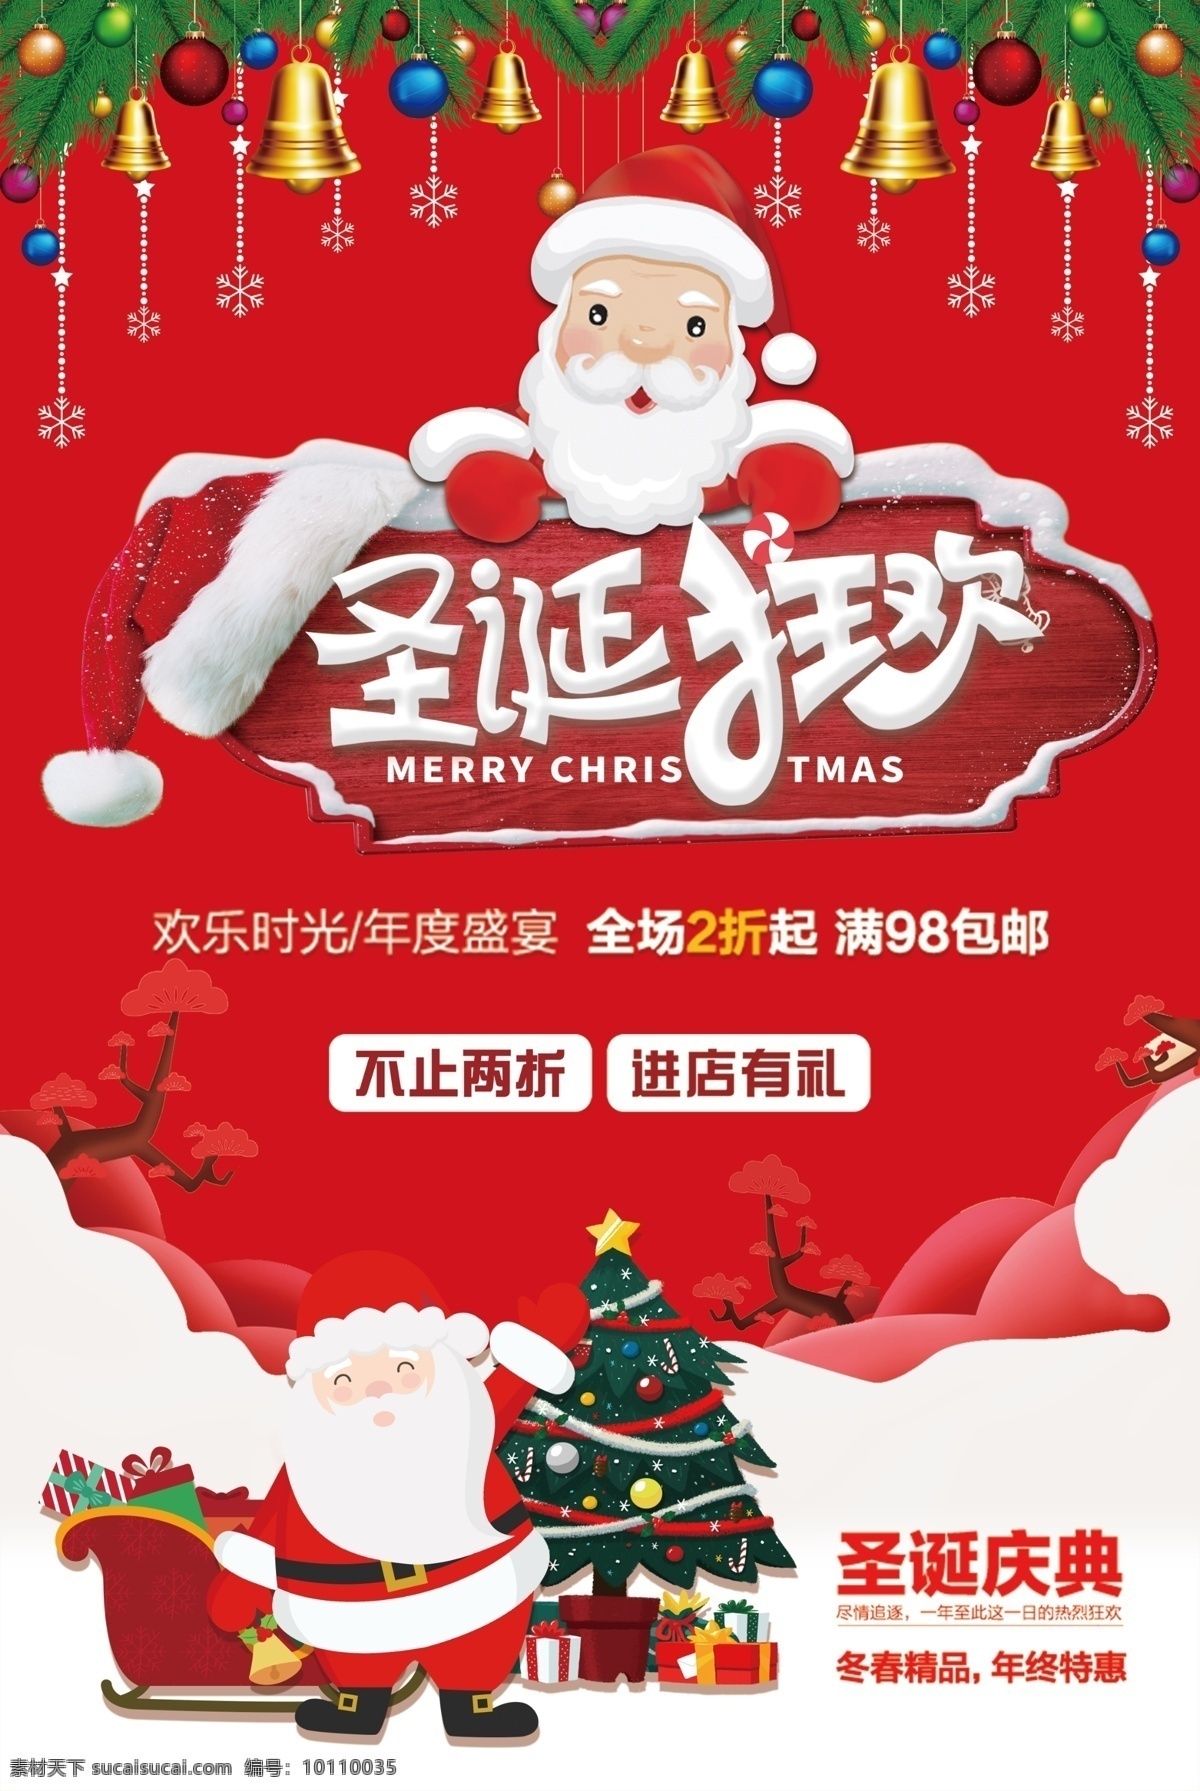 2018 圣诞 红色 喷绘 模板 圣诞节 全场两折 圣诞老人 麋鹿 大气 卡通 商场 海报 促销 宣传 大红